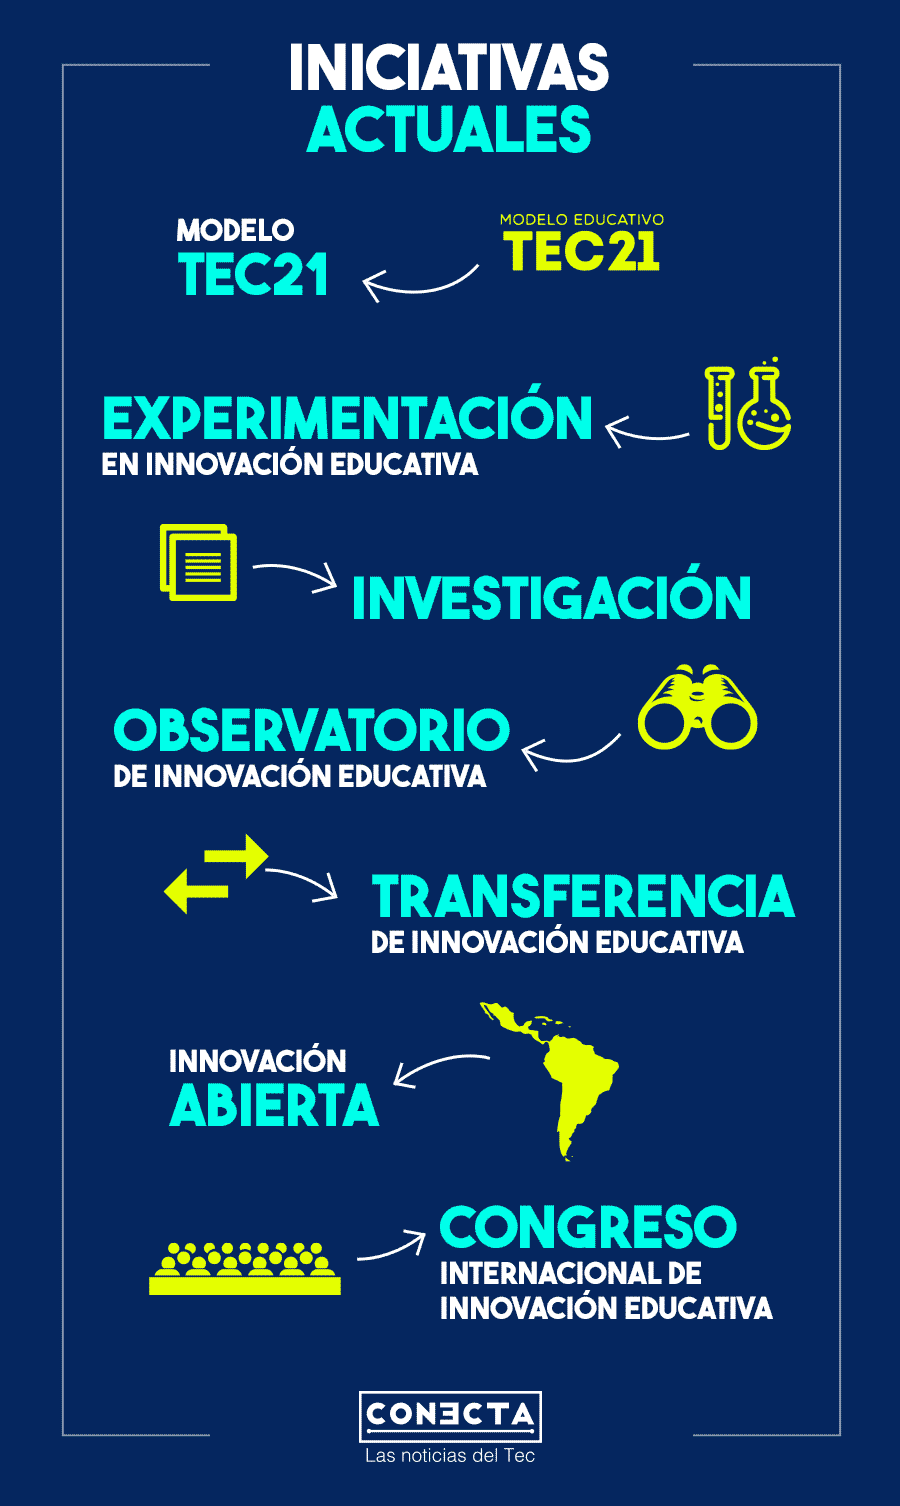 Algunas acciones del Tec en innovación educativa se incorporan al instituto.